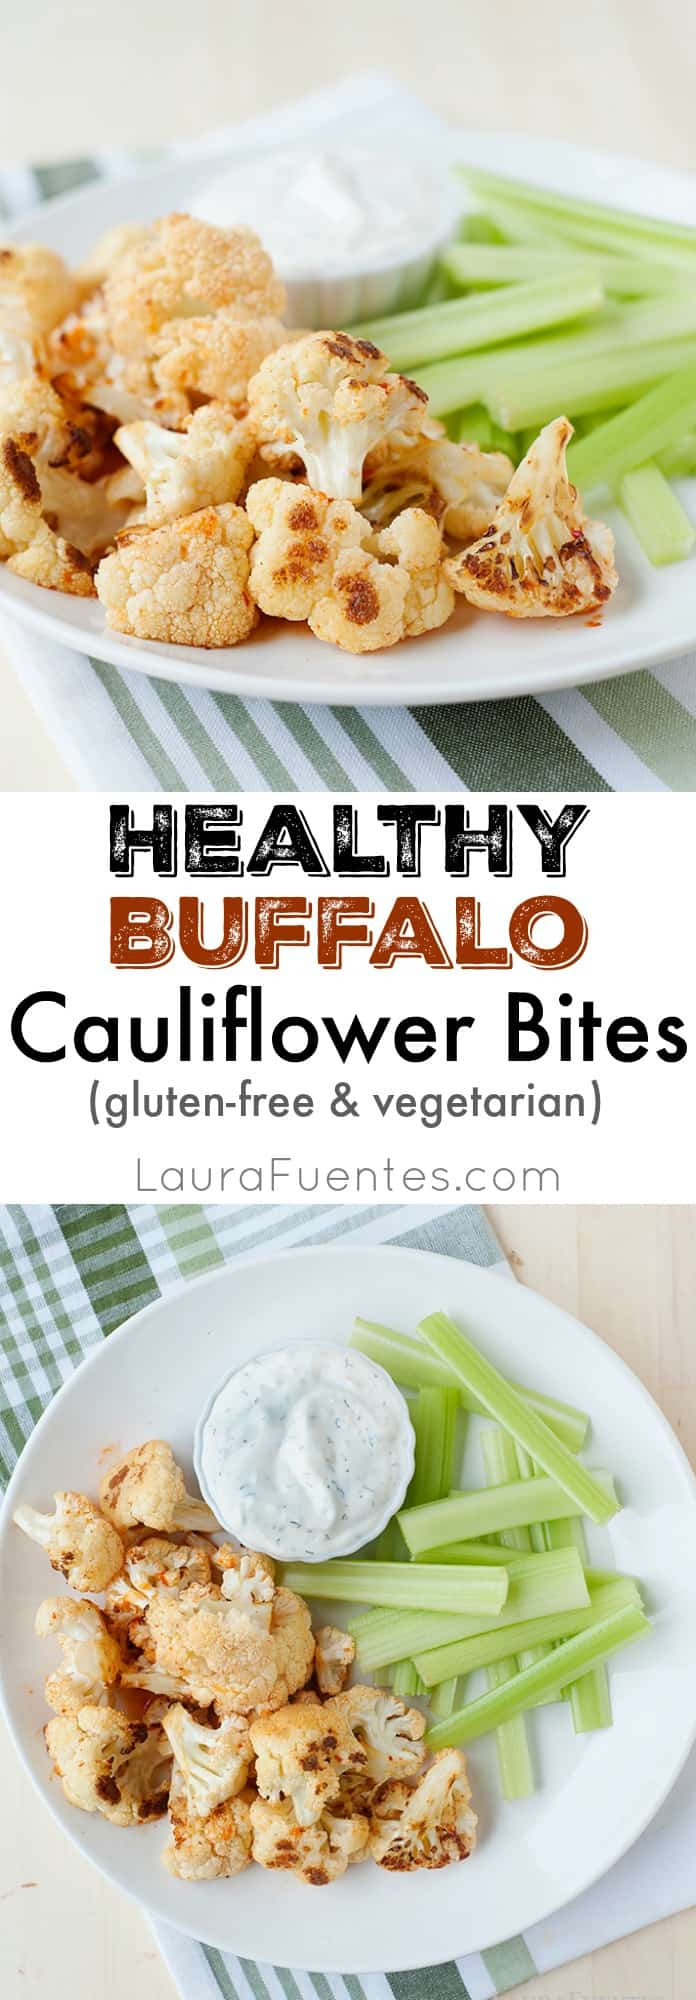 Healthy Buffalo Cauliflower
 Healthy Buffalo Cauliflower Bites